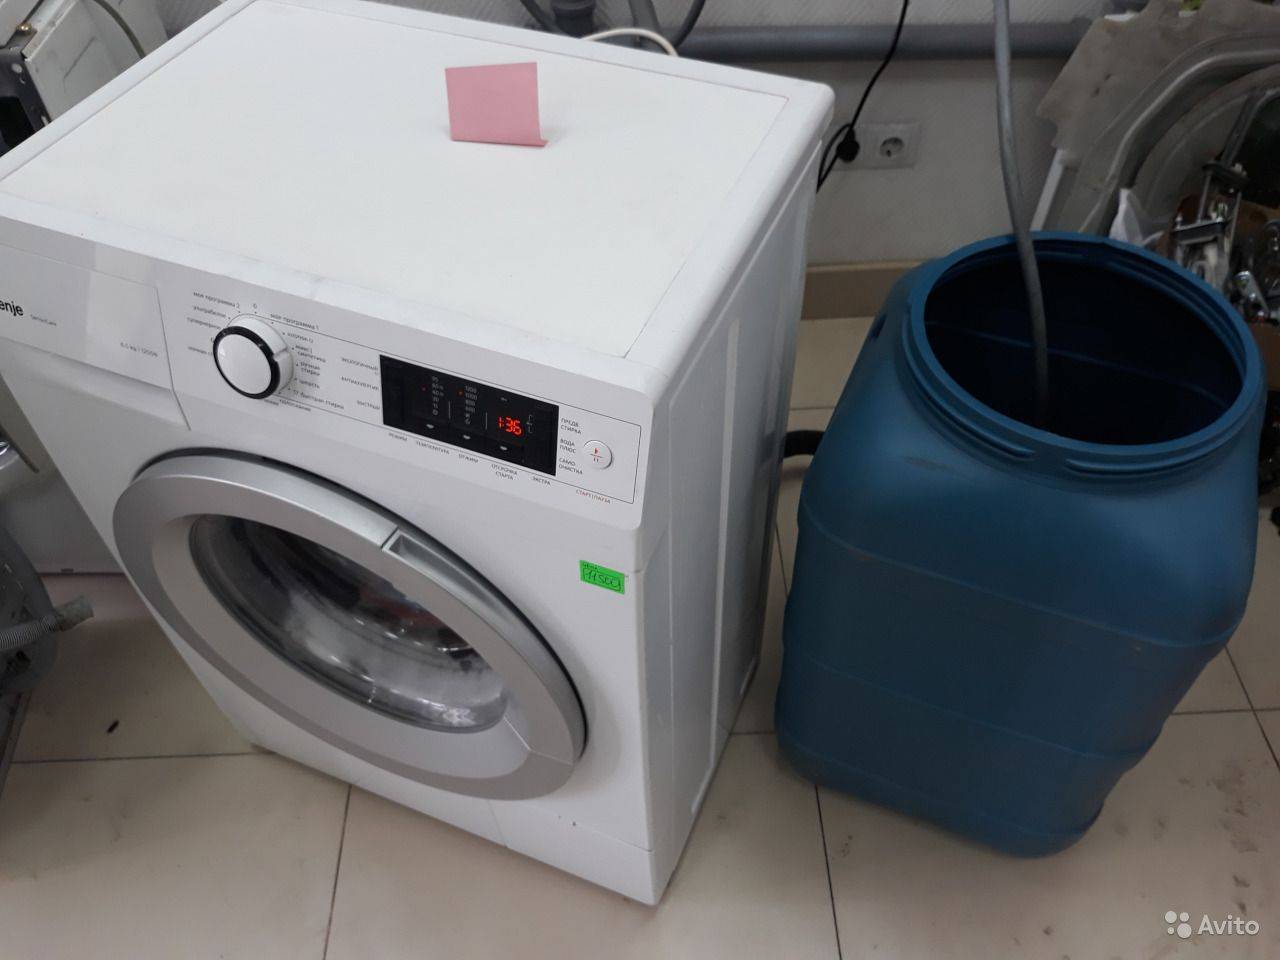 Как выбрать стиральную машину-автомат для сельской местности - жми!
как выбрать стиральную машину-автомат для сельской местности - жми!